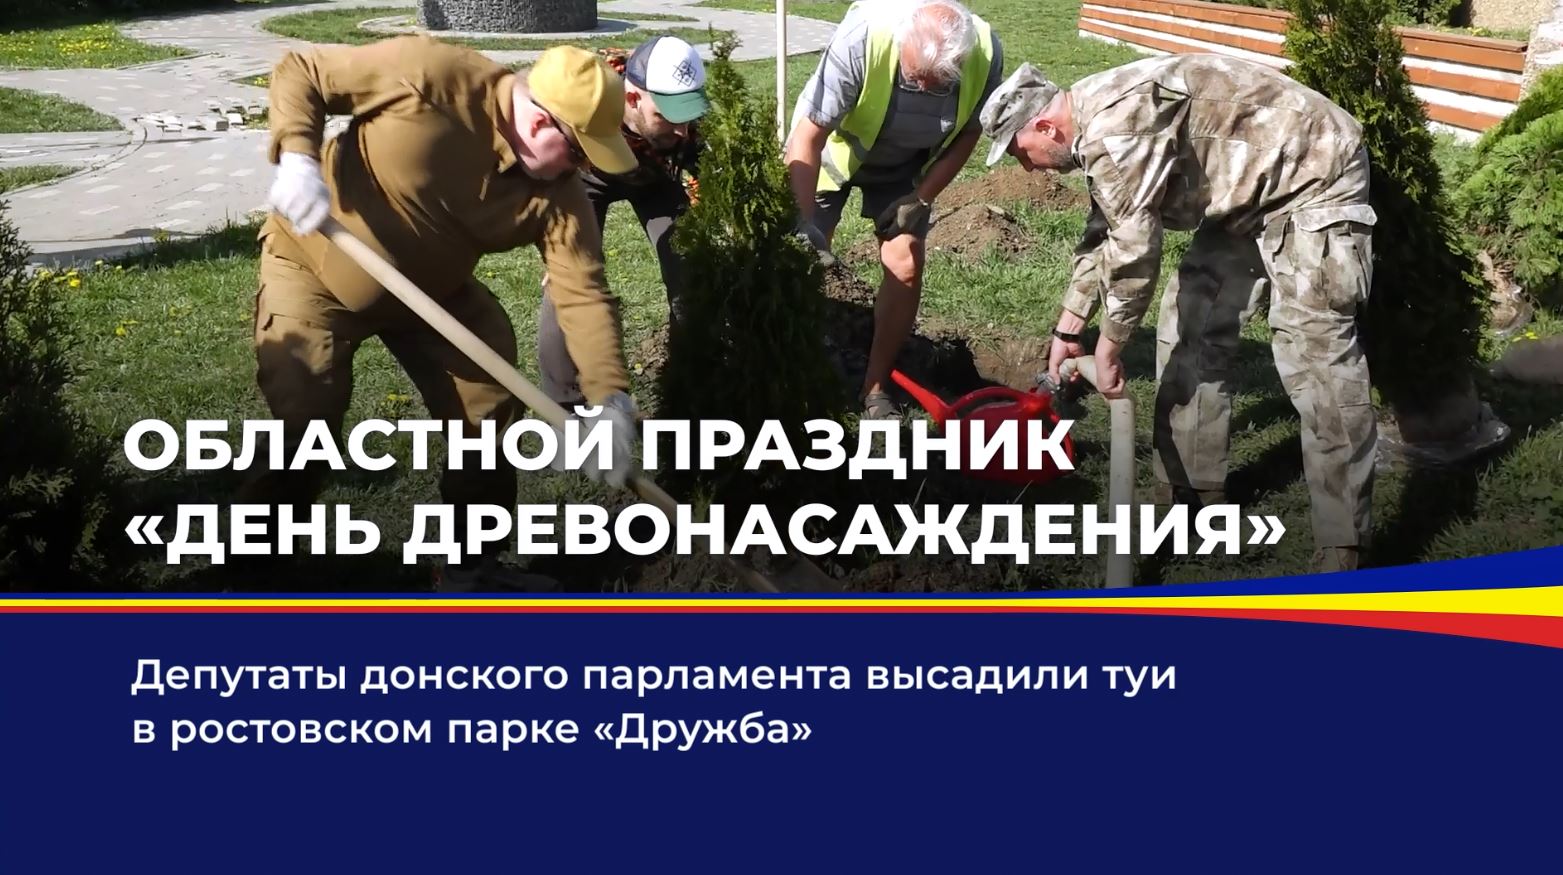 Депутаты донского парламента высадили туи в ростовском парке "Дружба"